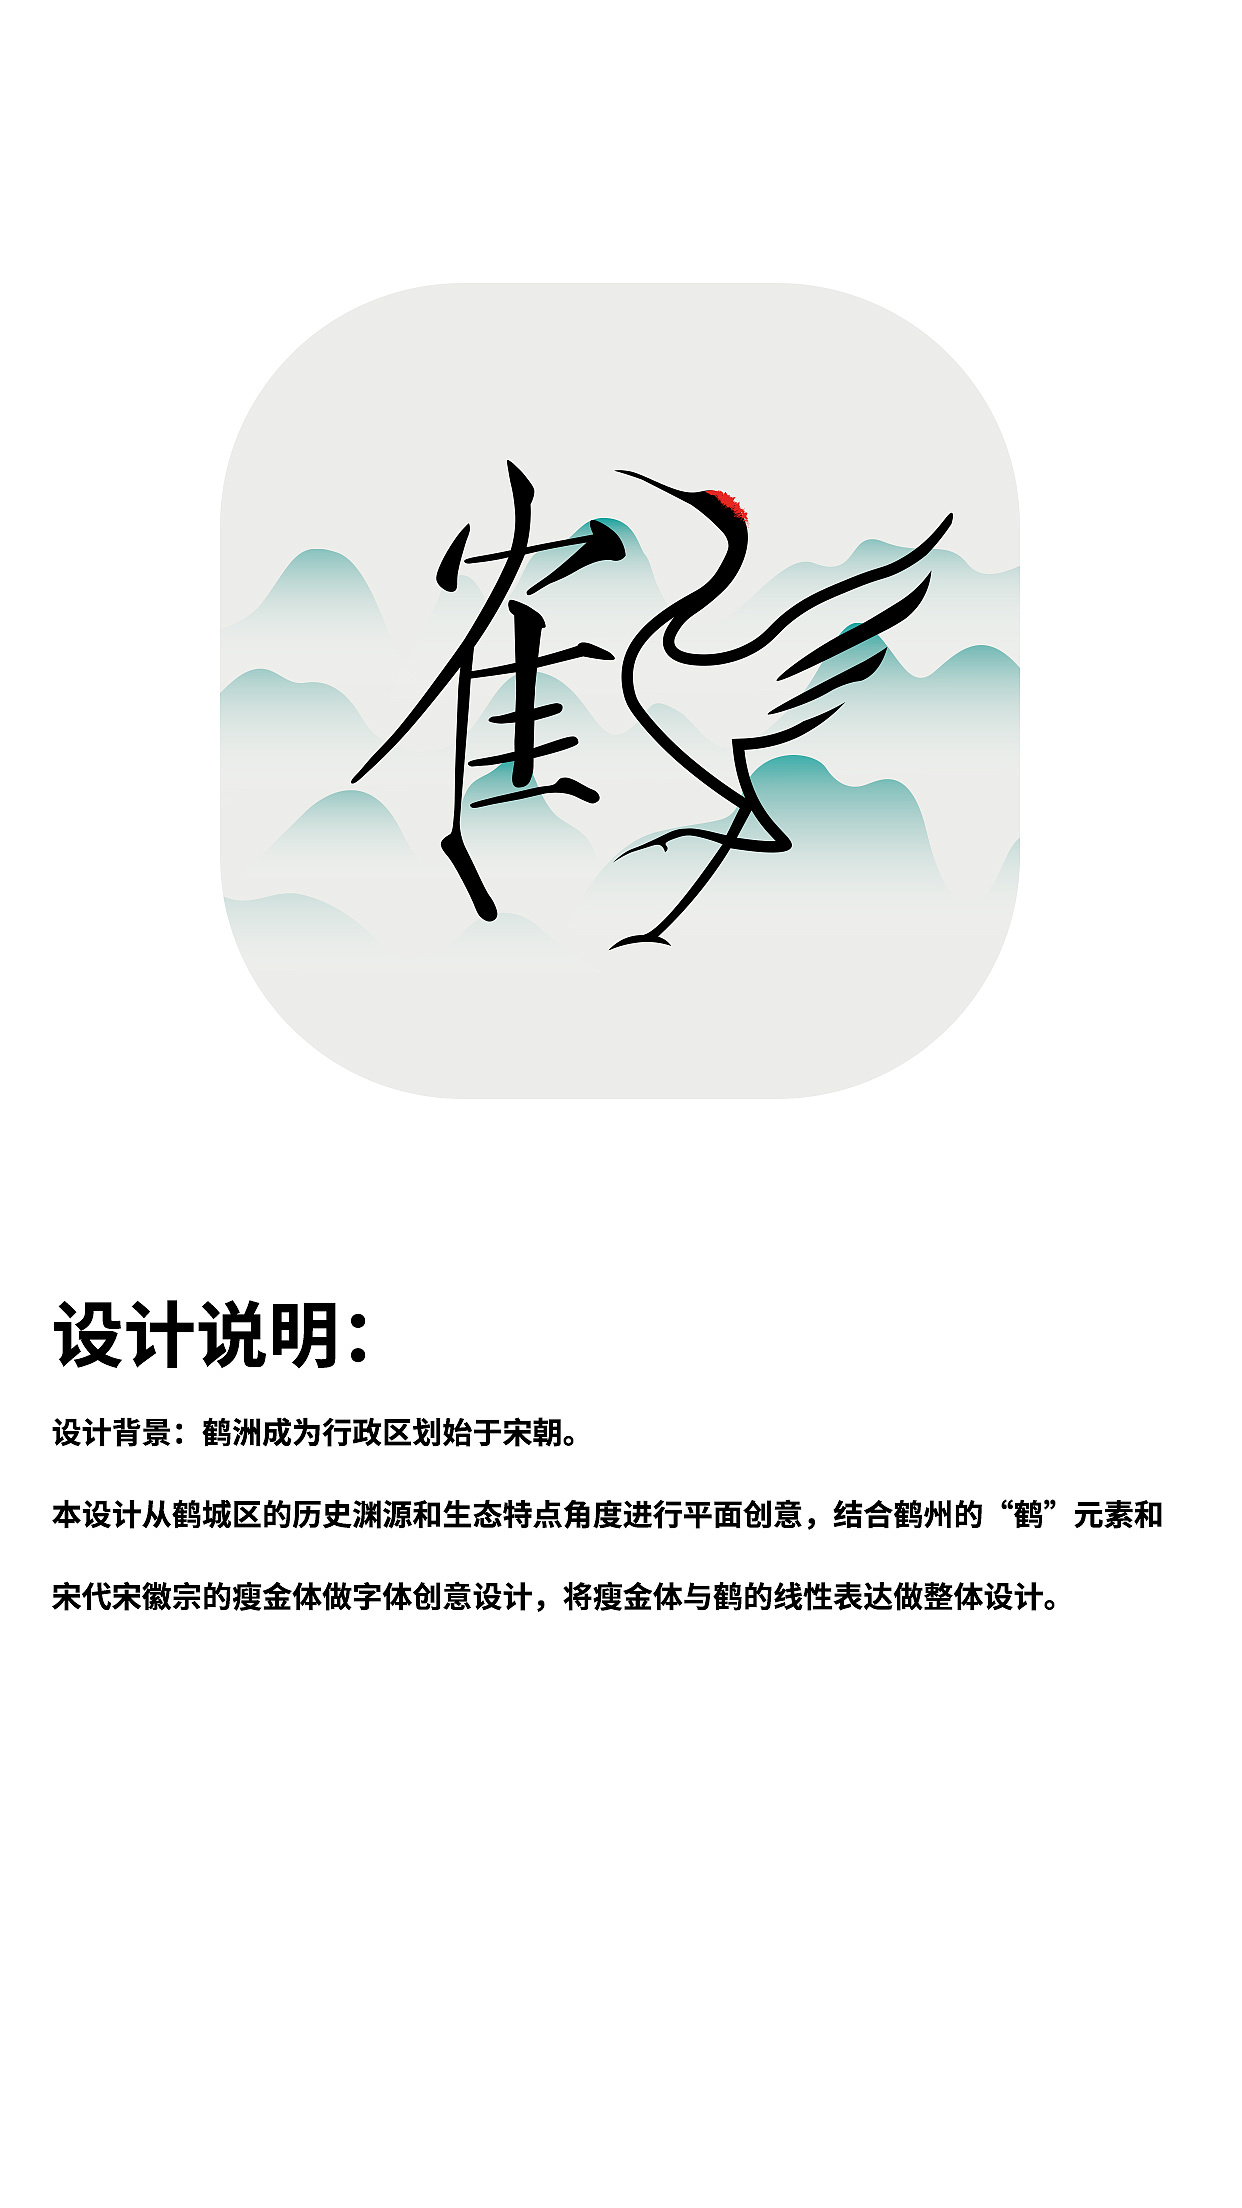 鹤城区标志-汉字图形设计